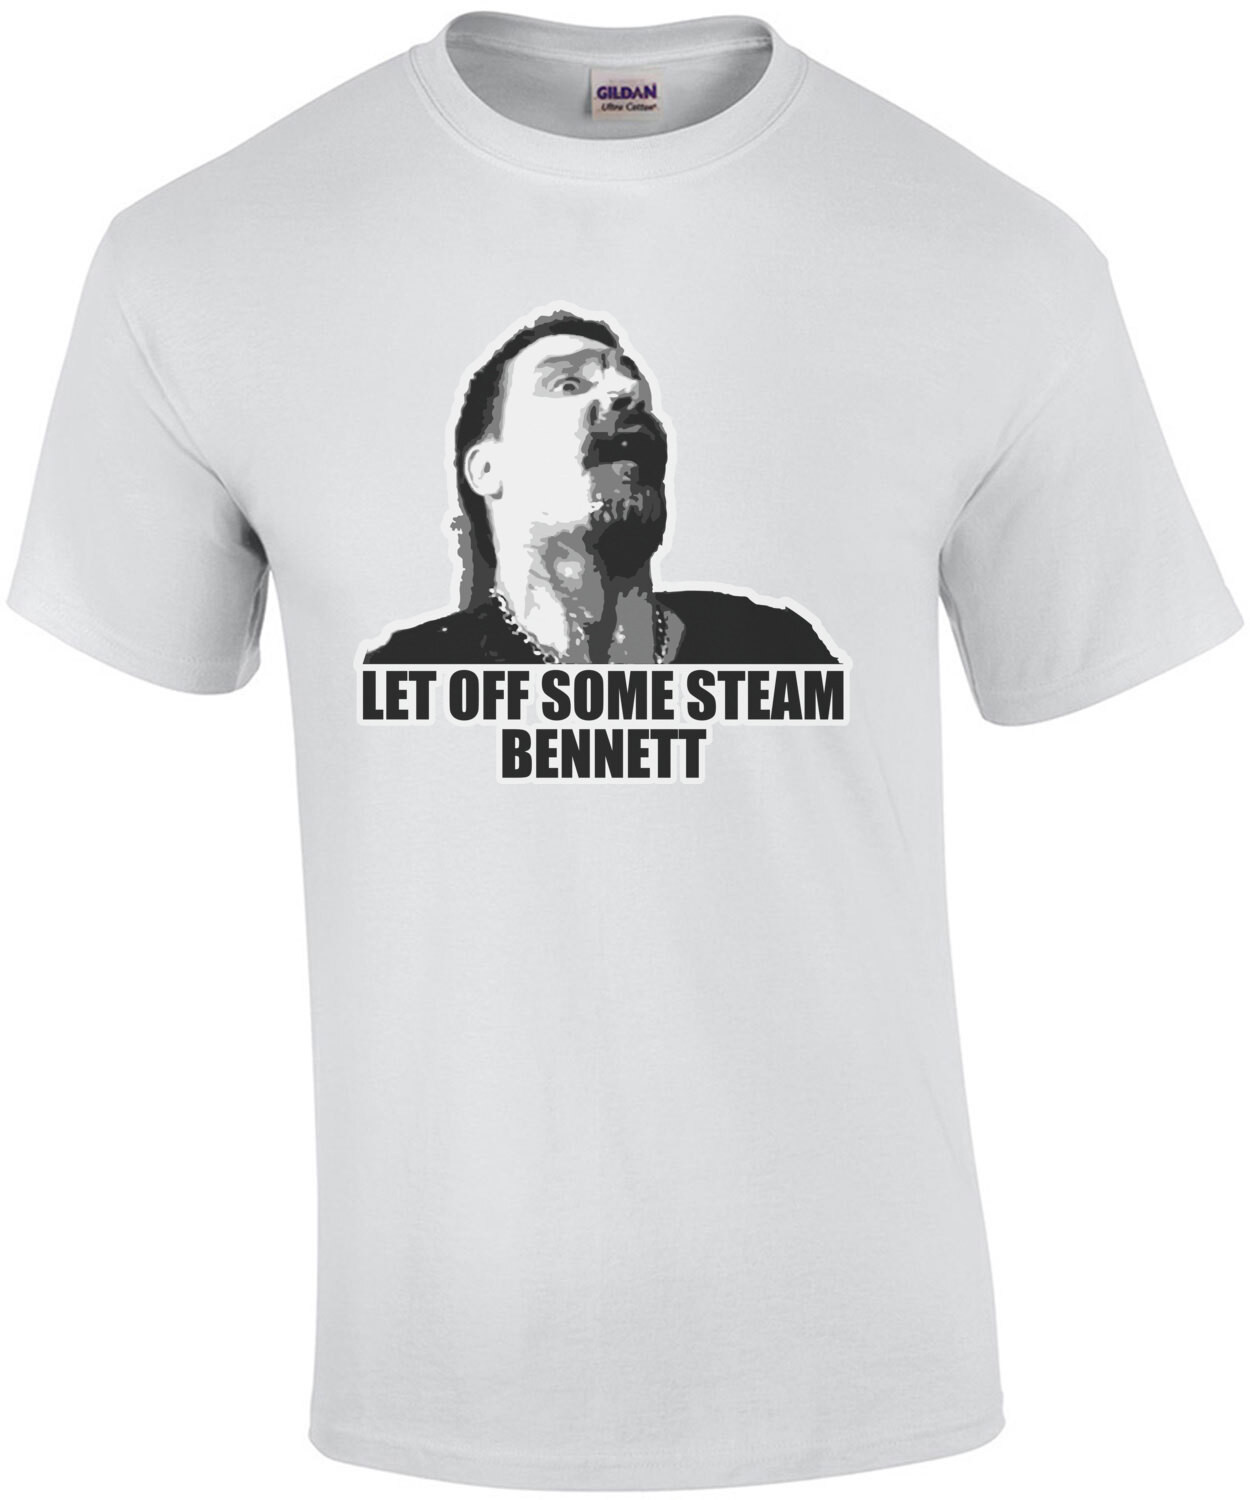 Let Off Some Steam Bennett - Commando - Arnold Schwarzenegger - 80's T-Shirt